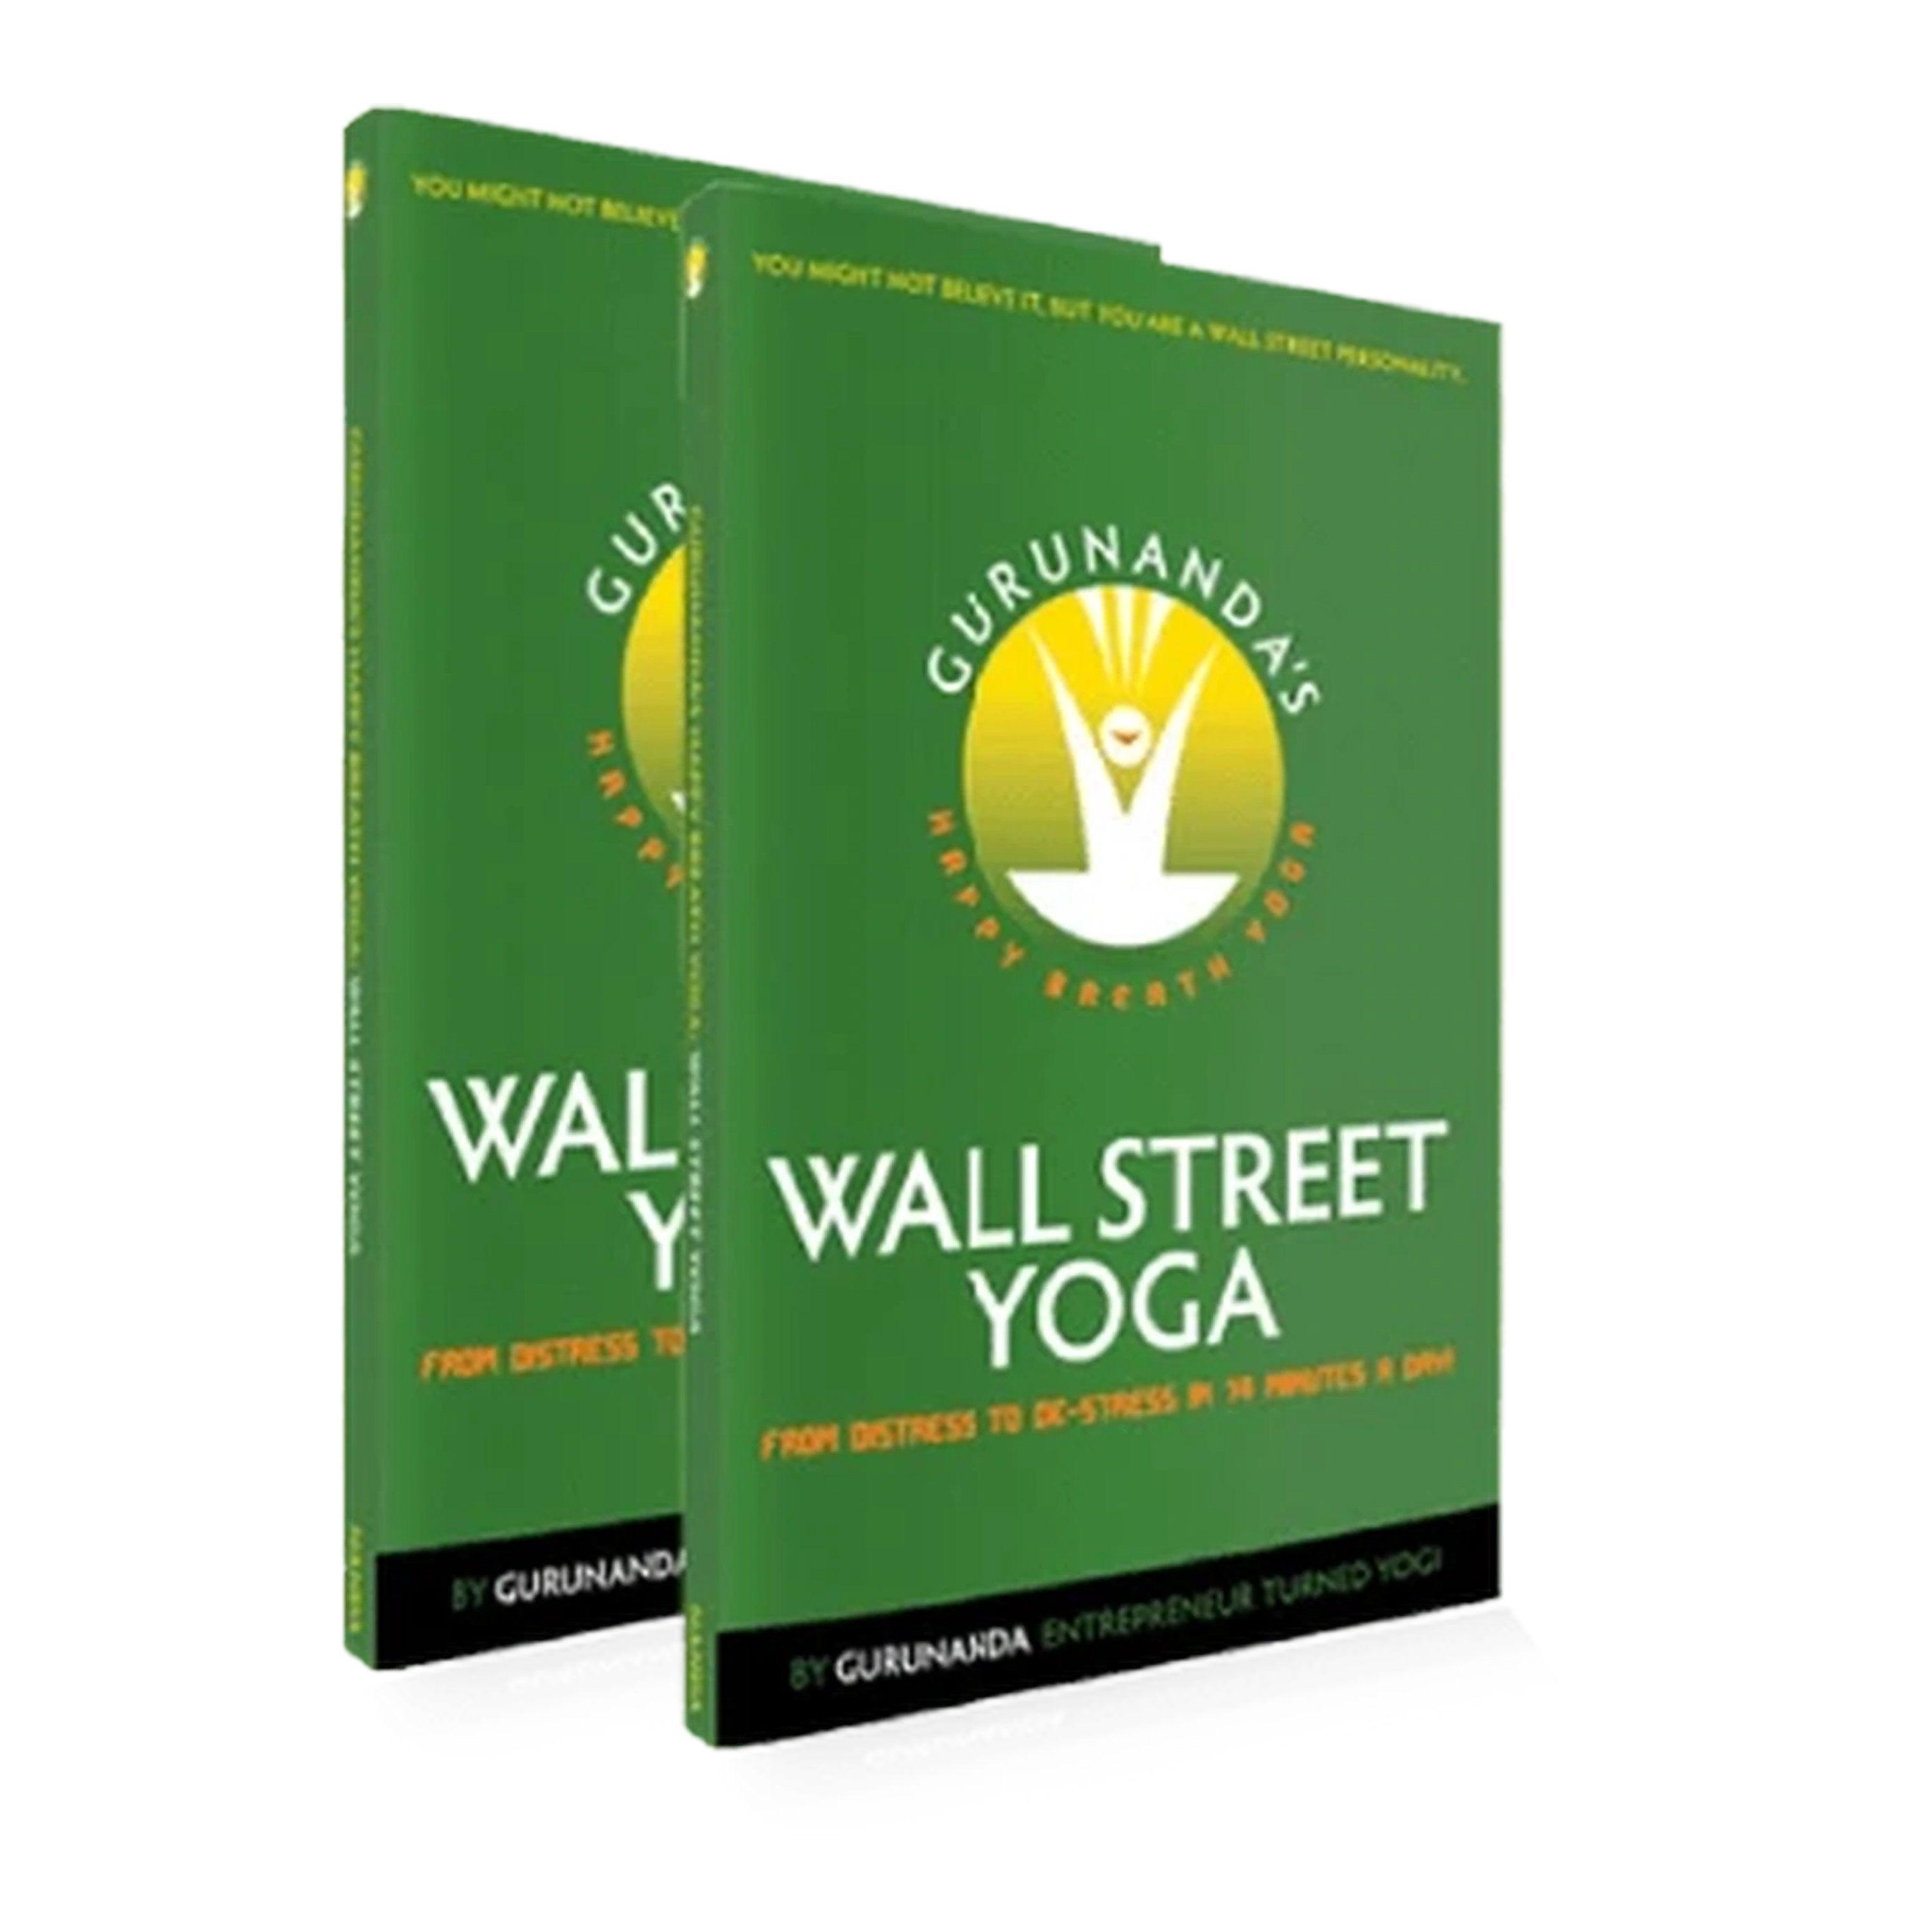 Happy Breath Yoga: Wall Street Yoga (Book) - GuruNanda